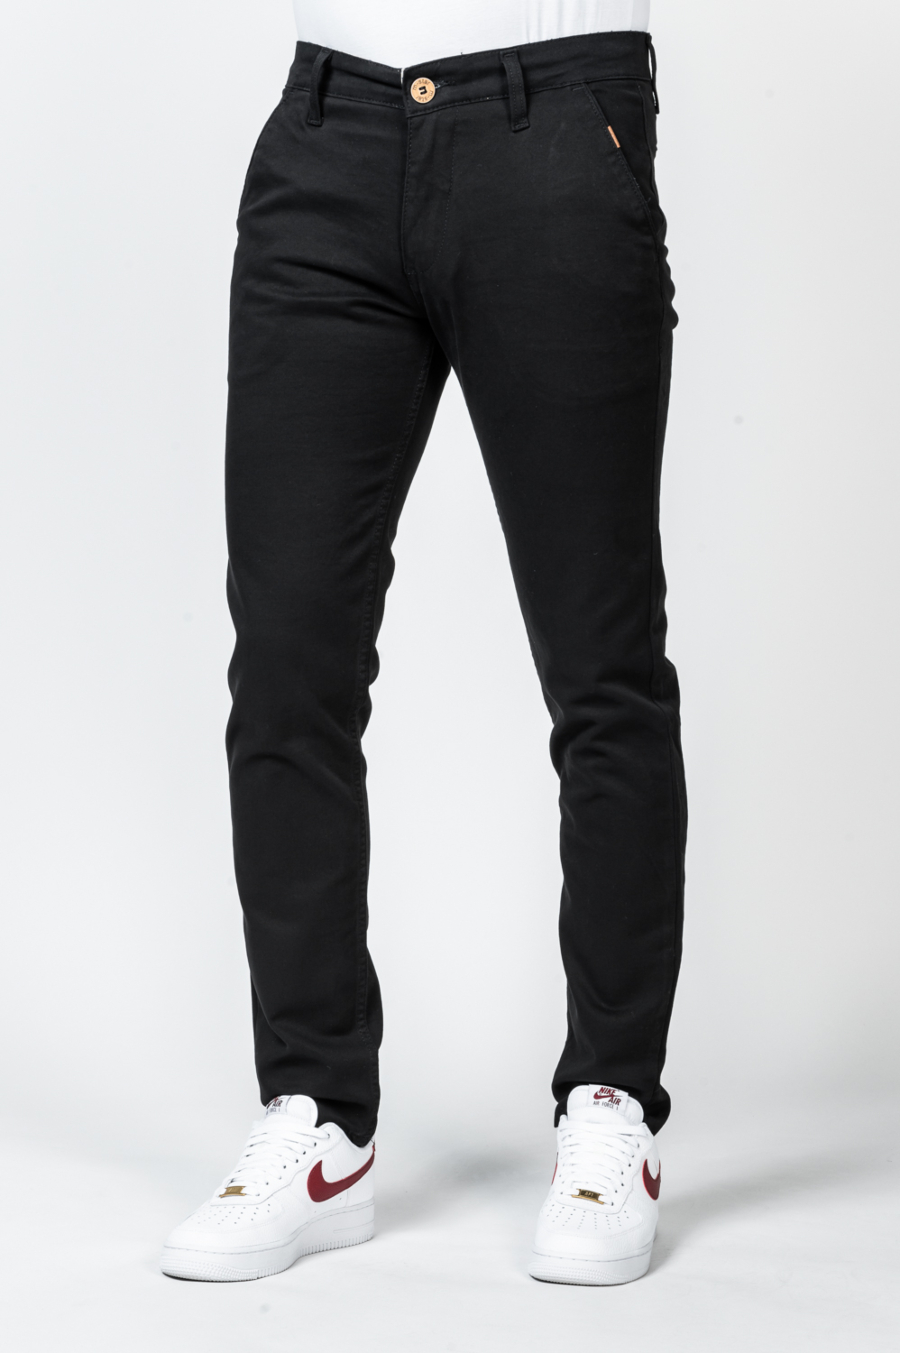 Moške hlače MS-MP700/014, črne